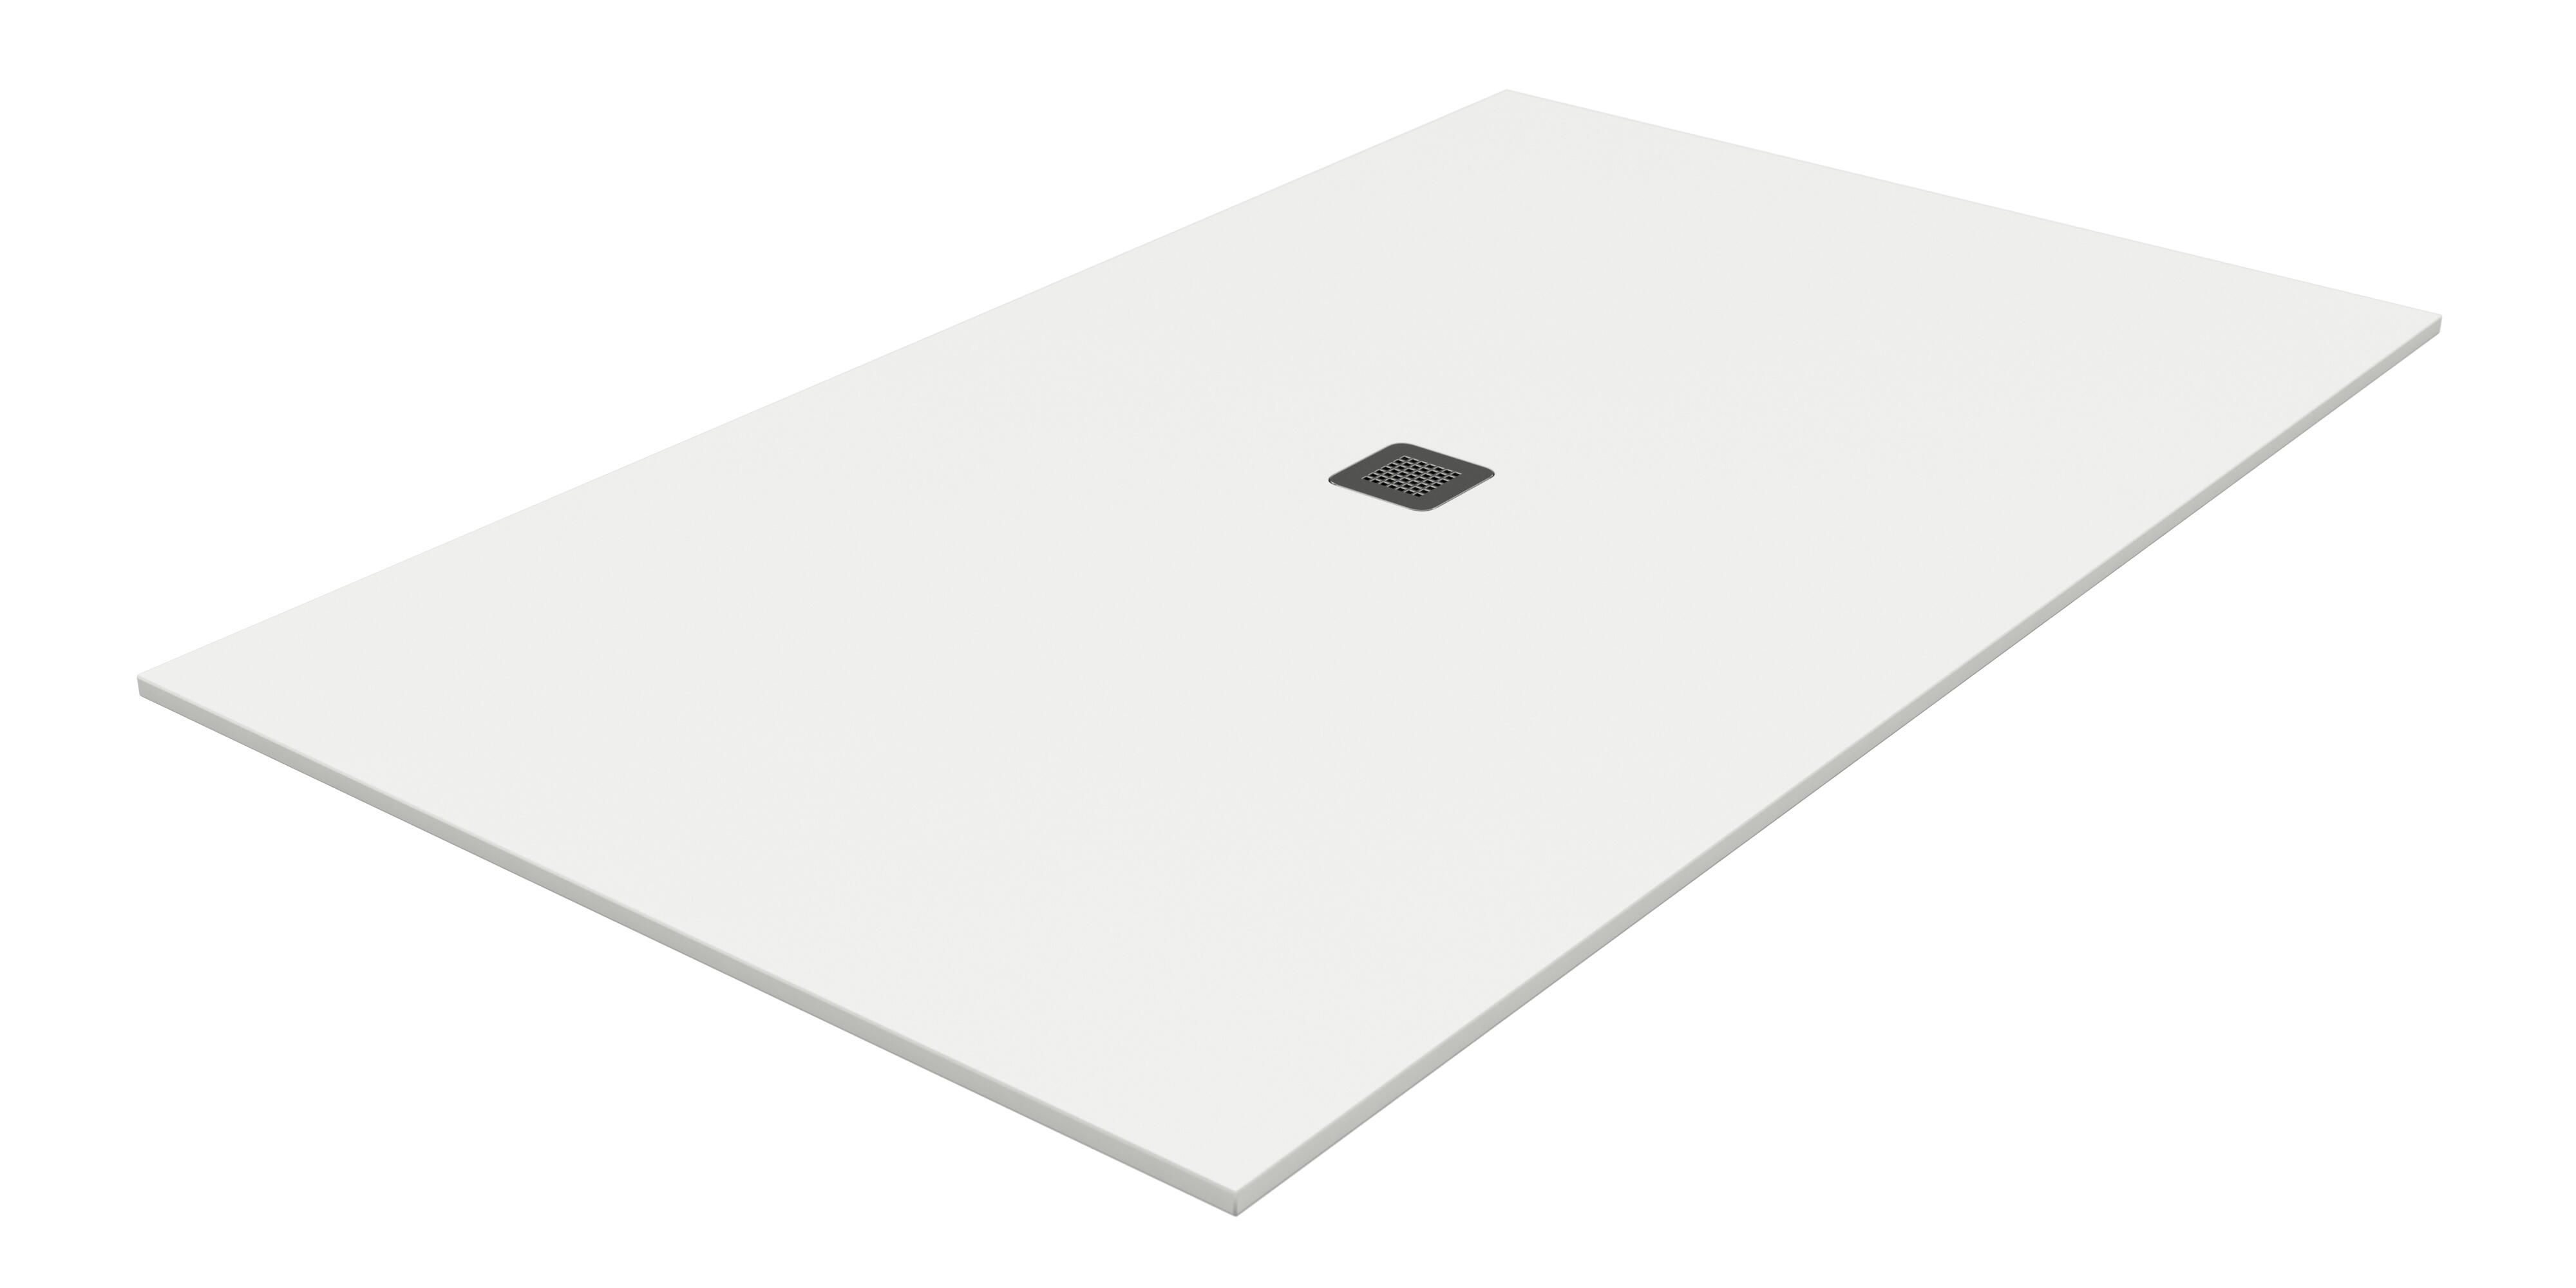 Plato de ducha kioto 180x80 cm blanco